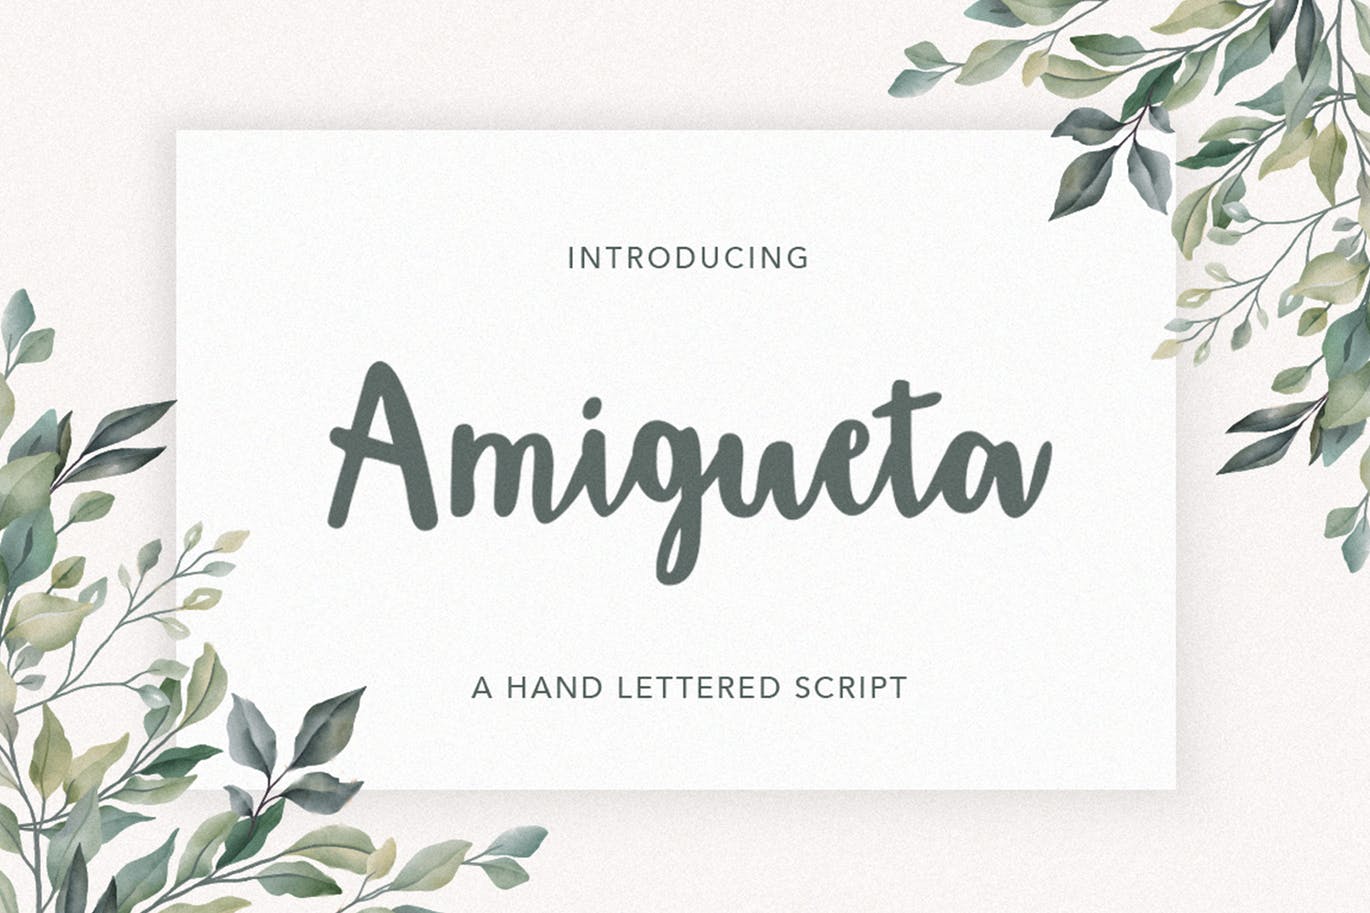 平面设计英文标题草书字体下载 Amigueta Script插图